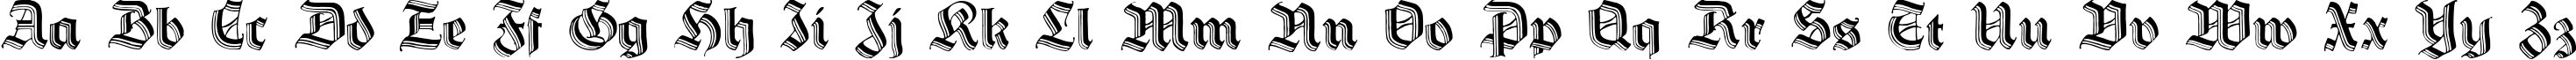 Пример написания английского алфавита шрифтом Hermann-GotischC